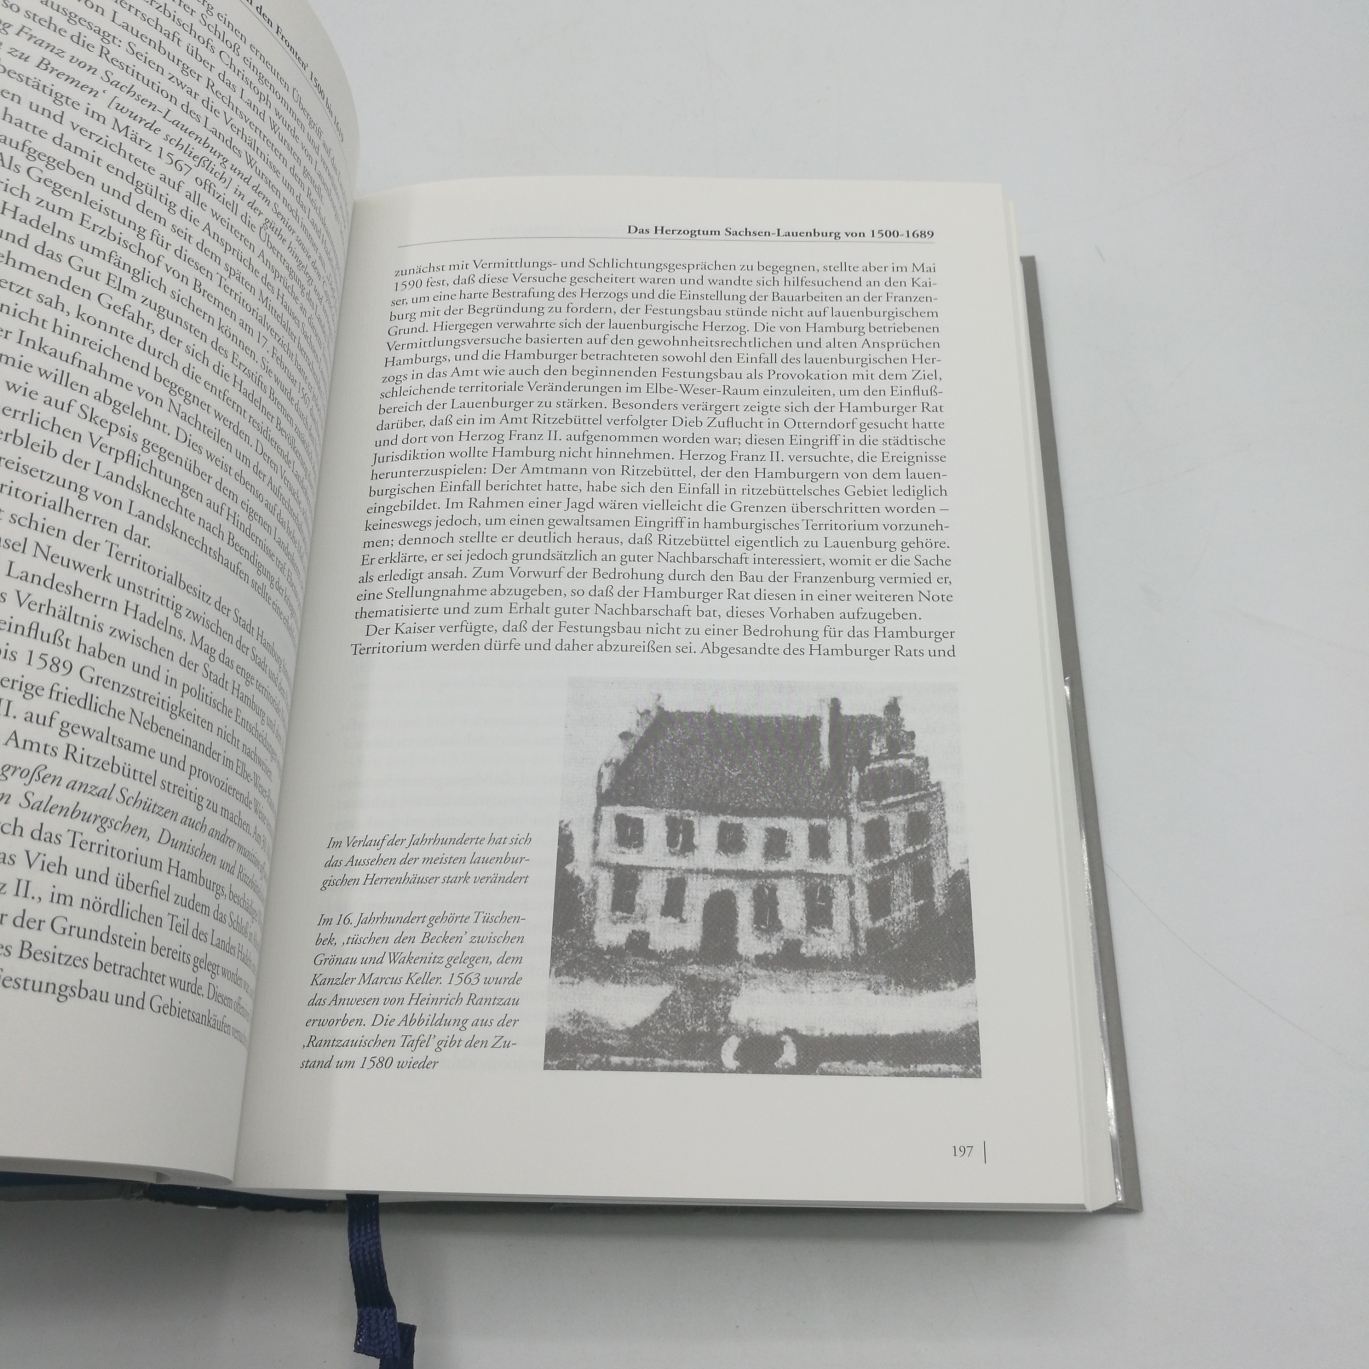 Opitz, Eckardt (Herausgeber): Herzogtum Lauenburg Das Land und seine Geschichte; ein Handbuch / hrsg. von Eckardt Opitz. [Fotos: Reinhard Scheiblich